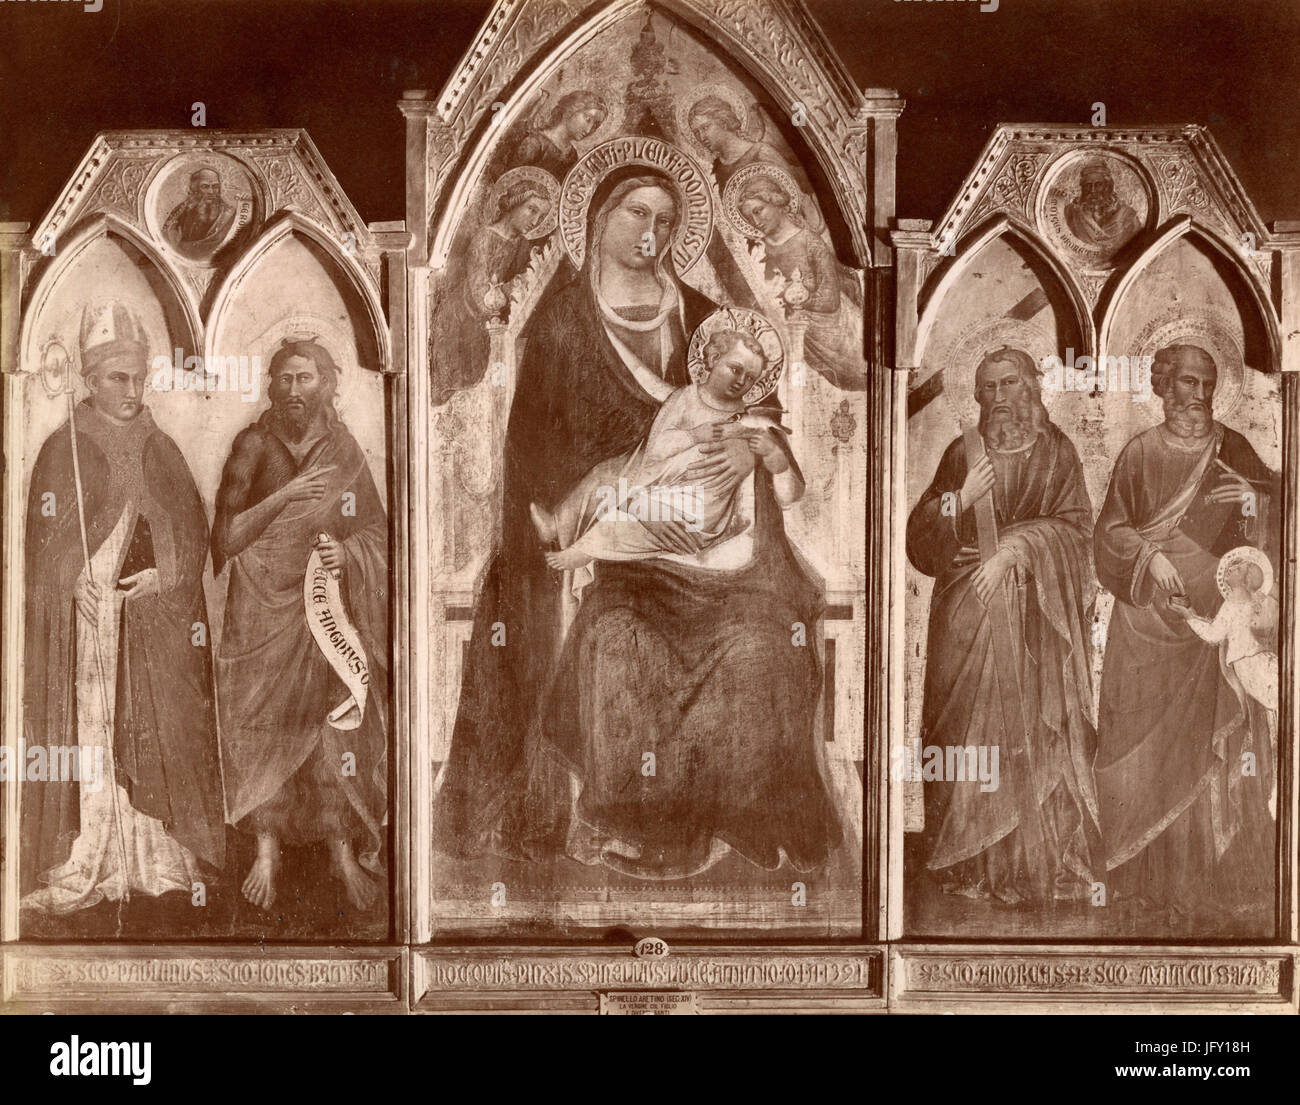 La Vierge et l'enfant avec les saints, peinture de Spinello Aretino, Florence, Italie Banque D'Images